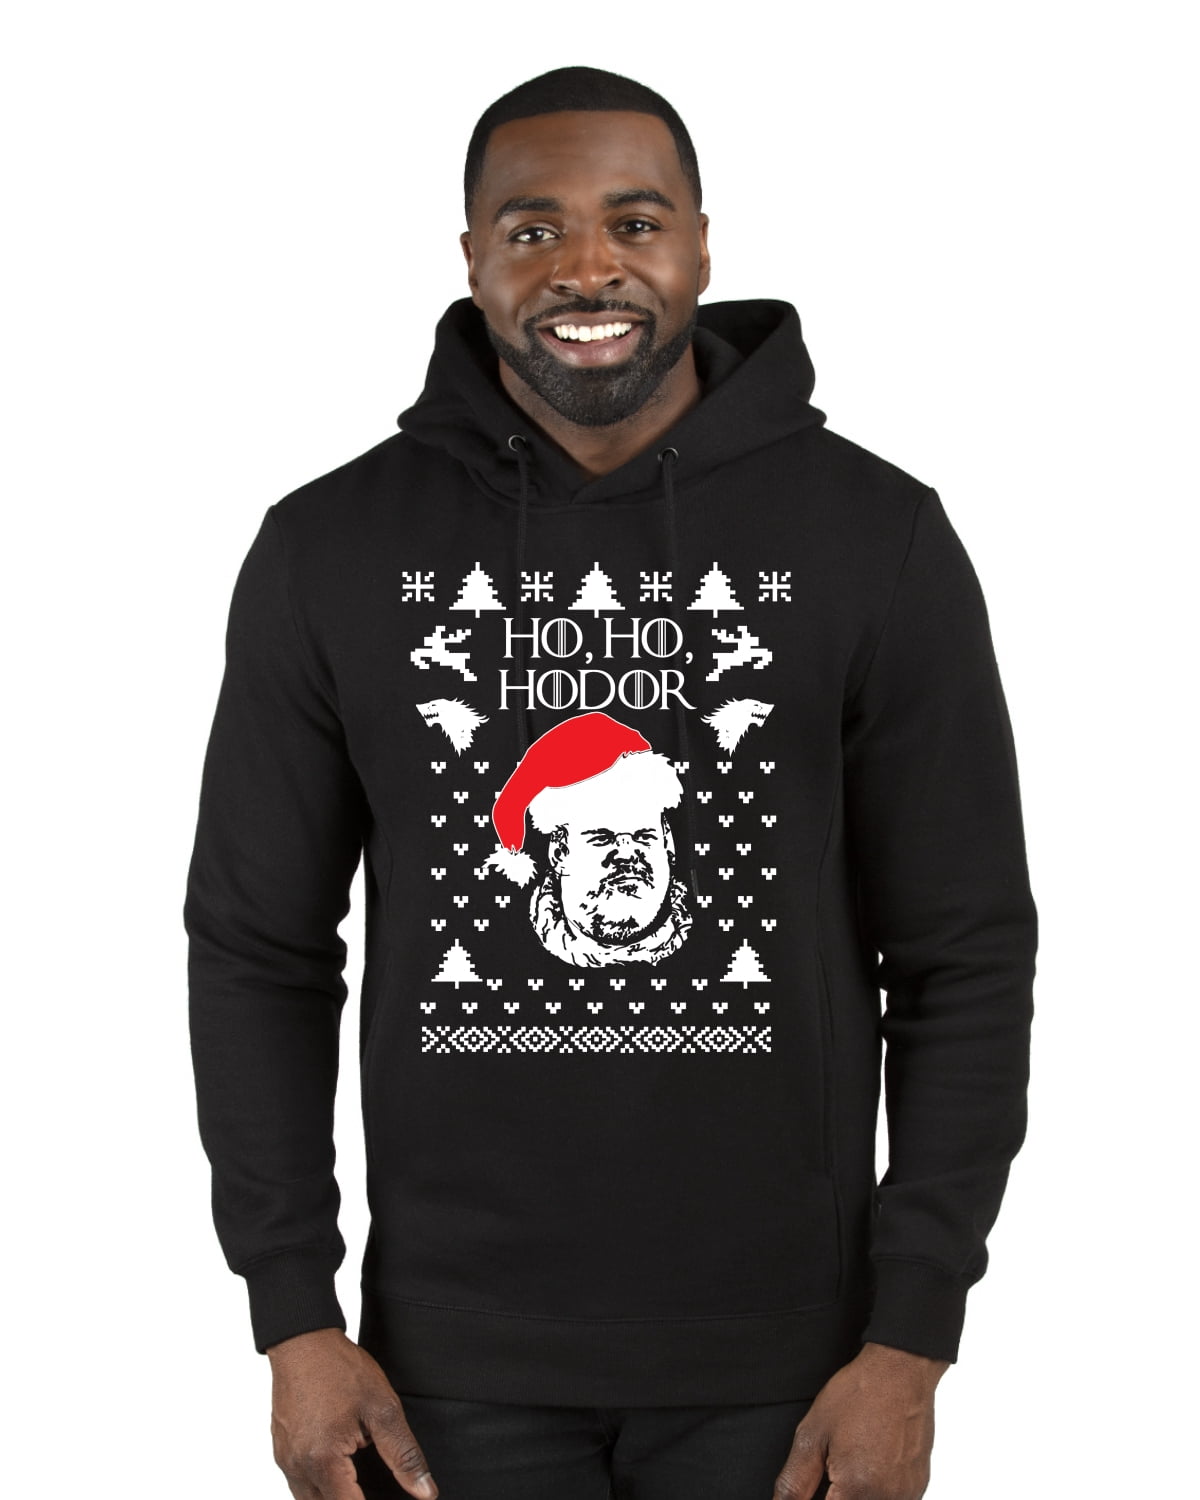 HO HO HO Hodor Game of Thrones New Ugly Christmas Sweater Unisex Sweatshirt